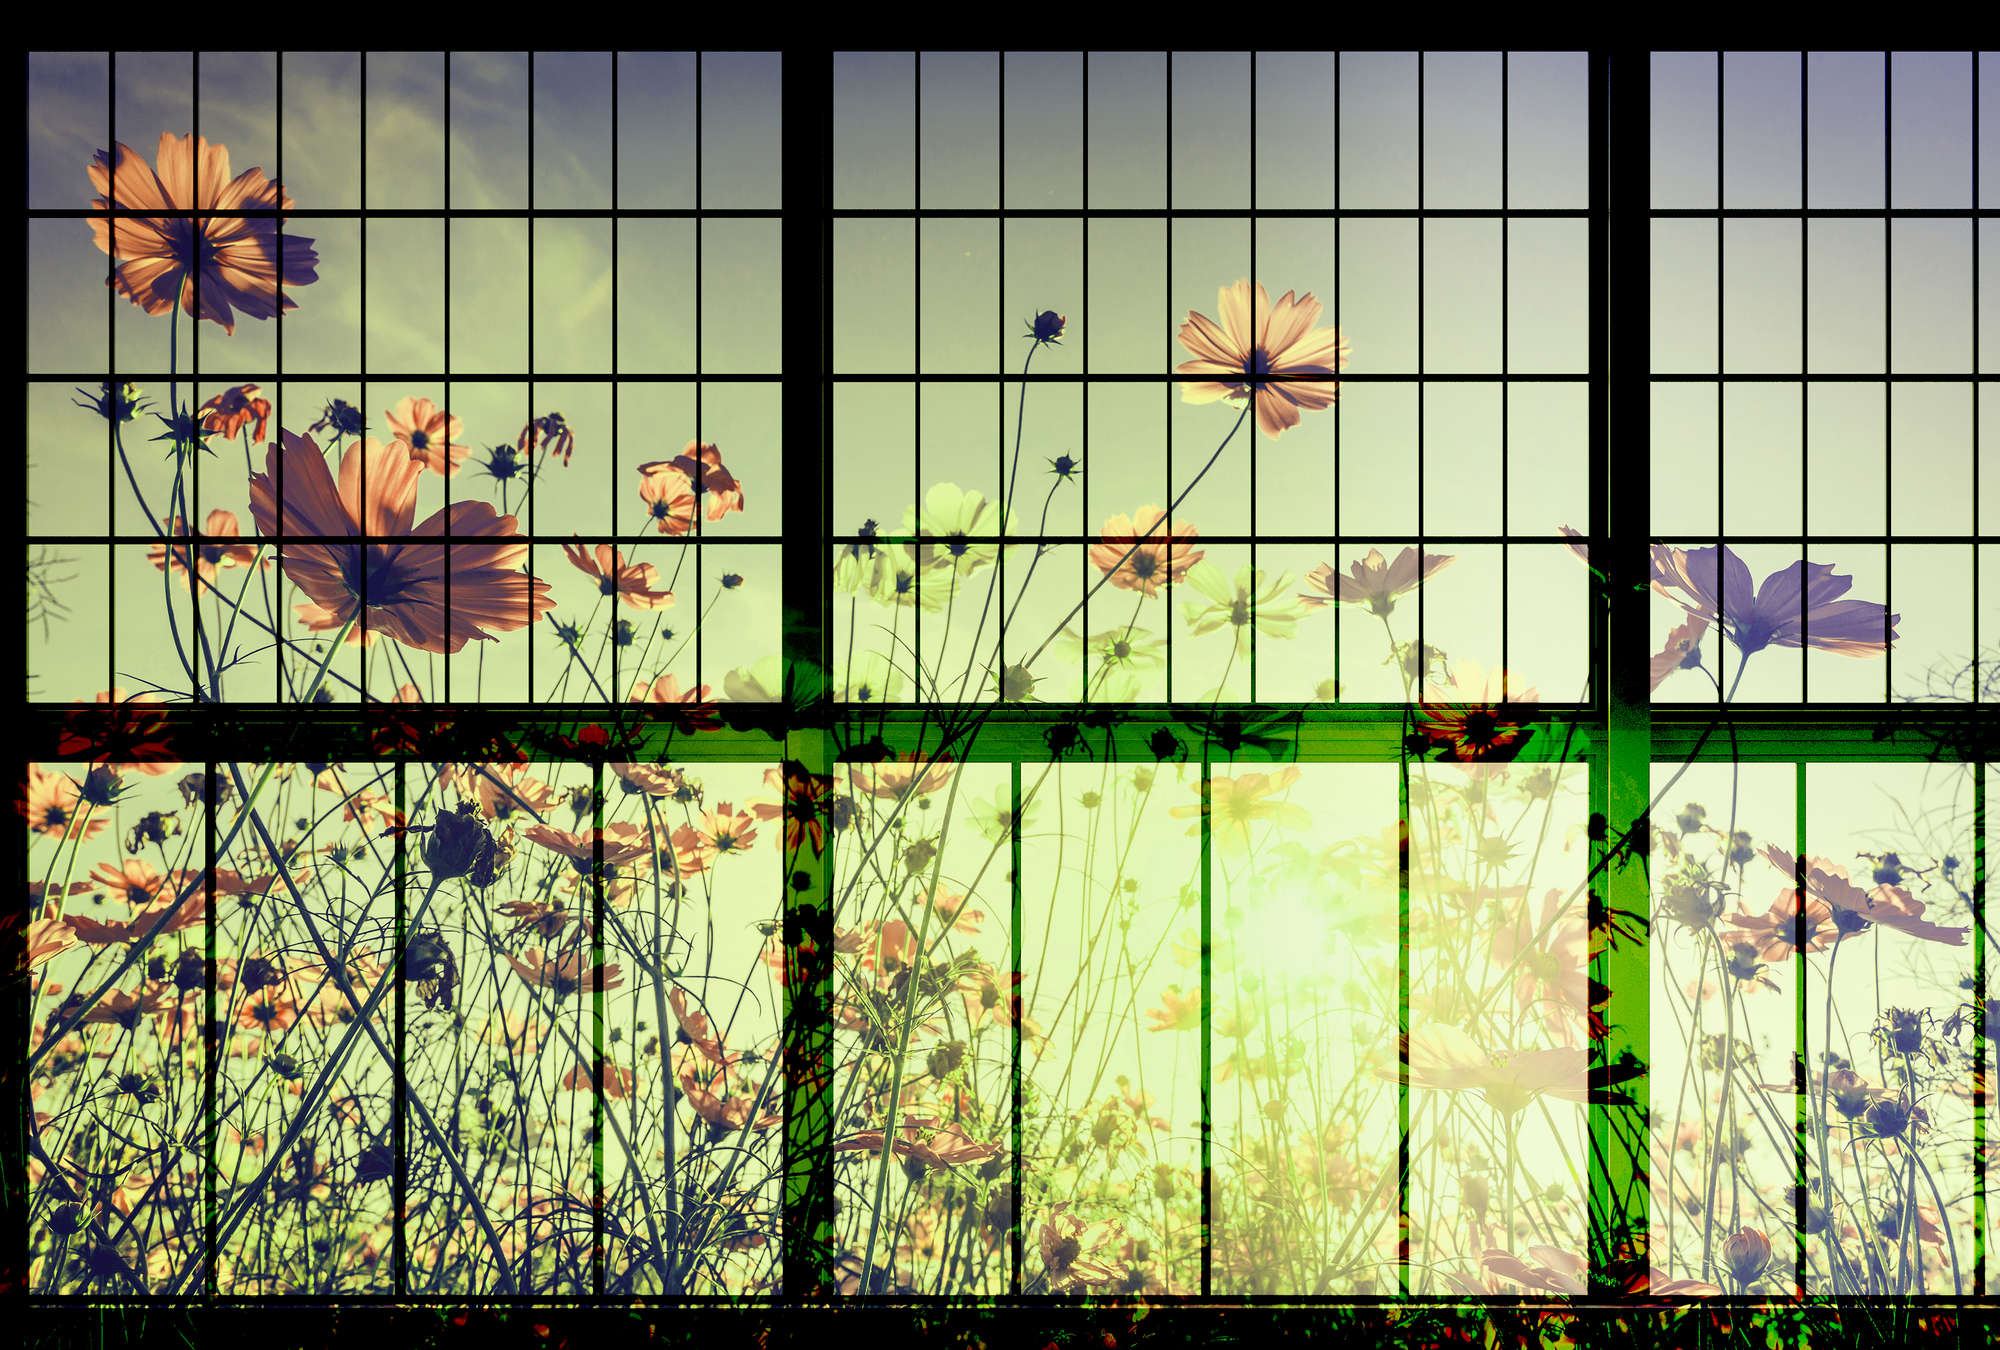             Meadow 2 - Papel pintado Muntin para ventanas con prado de flores - Verde, Rosa | Liso mate
        